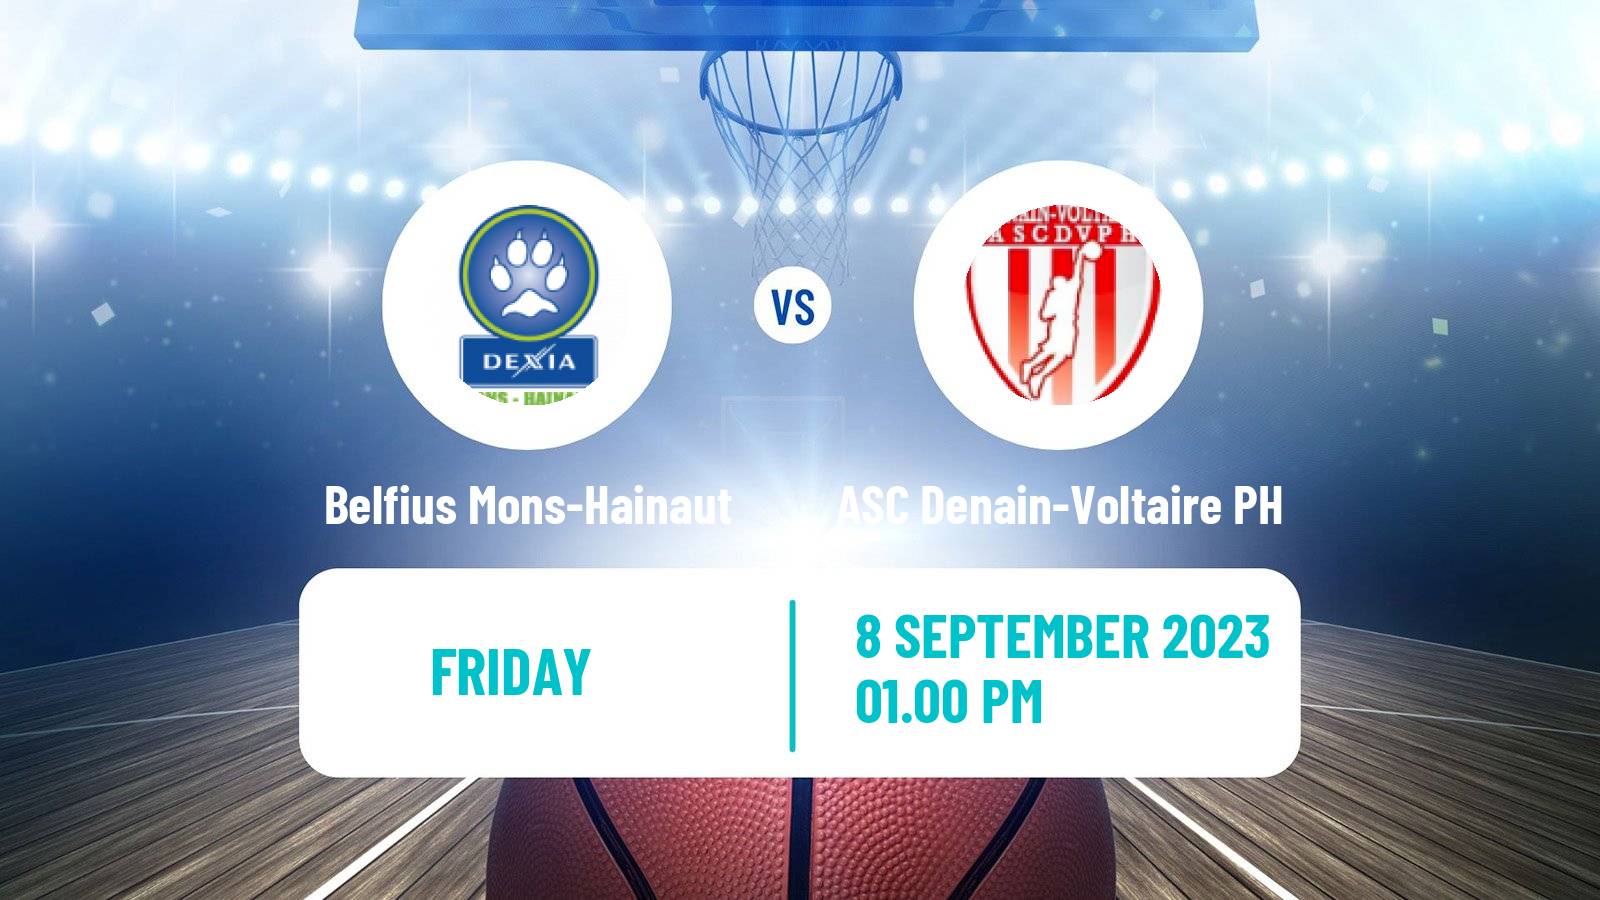 Basketball Club Friendly Basketball Belfius Mons-Hainaut - ASC Denain-Voltaire PH